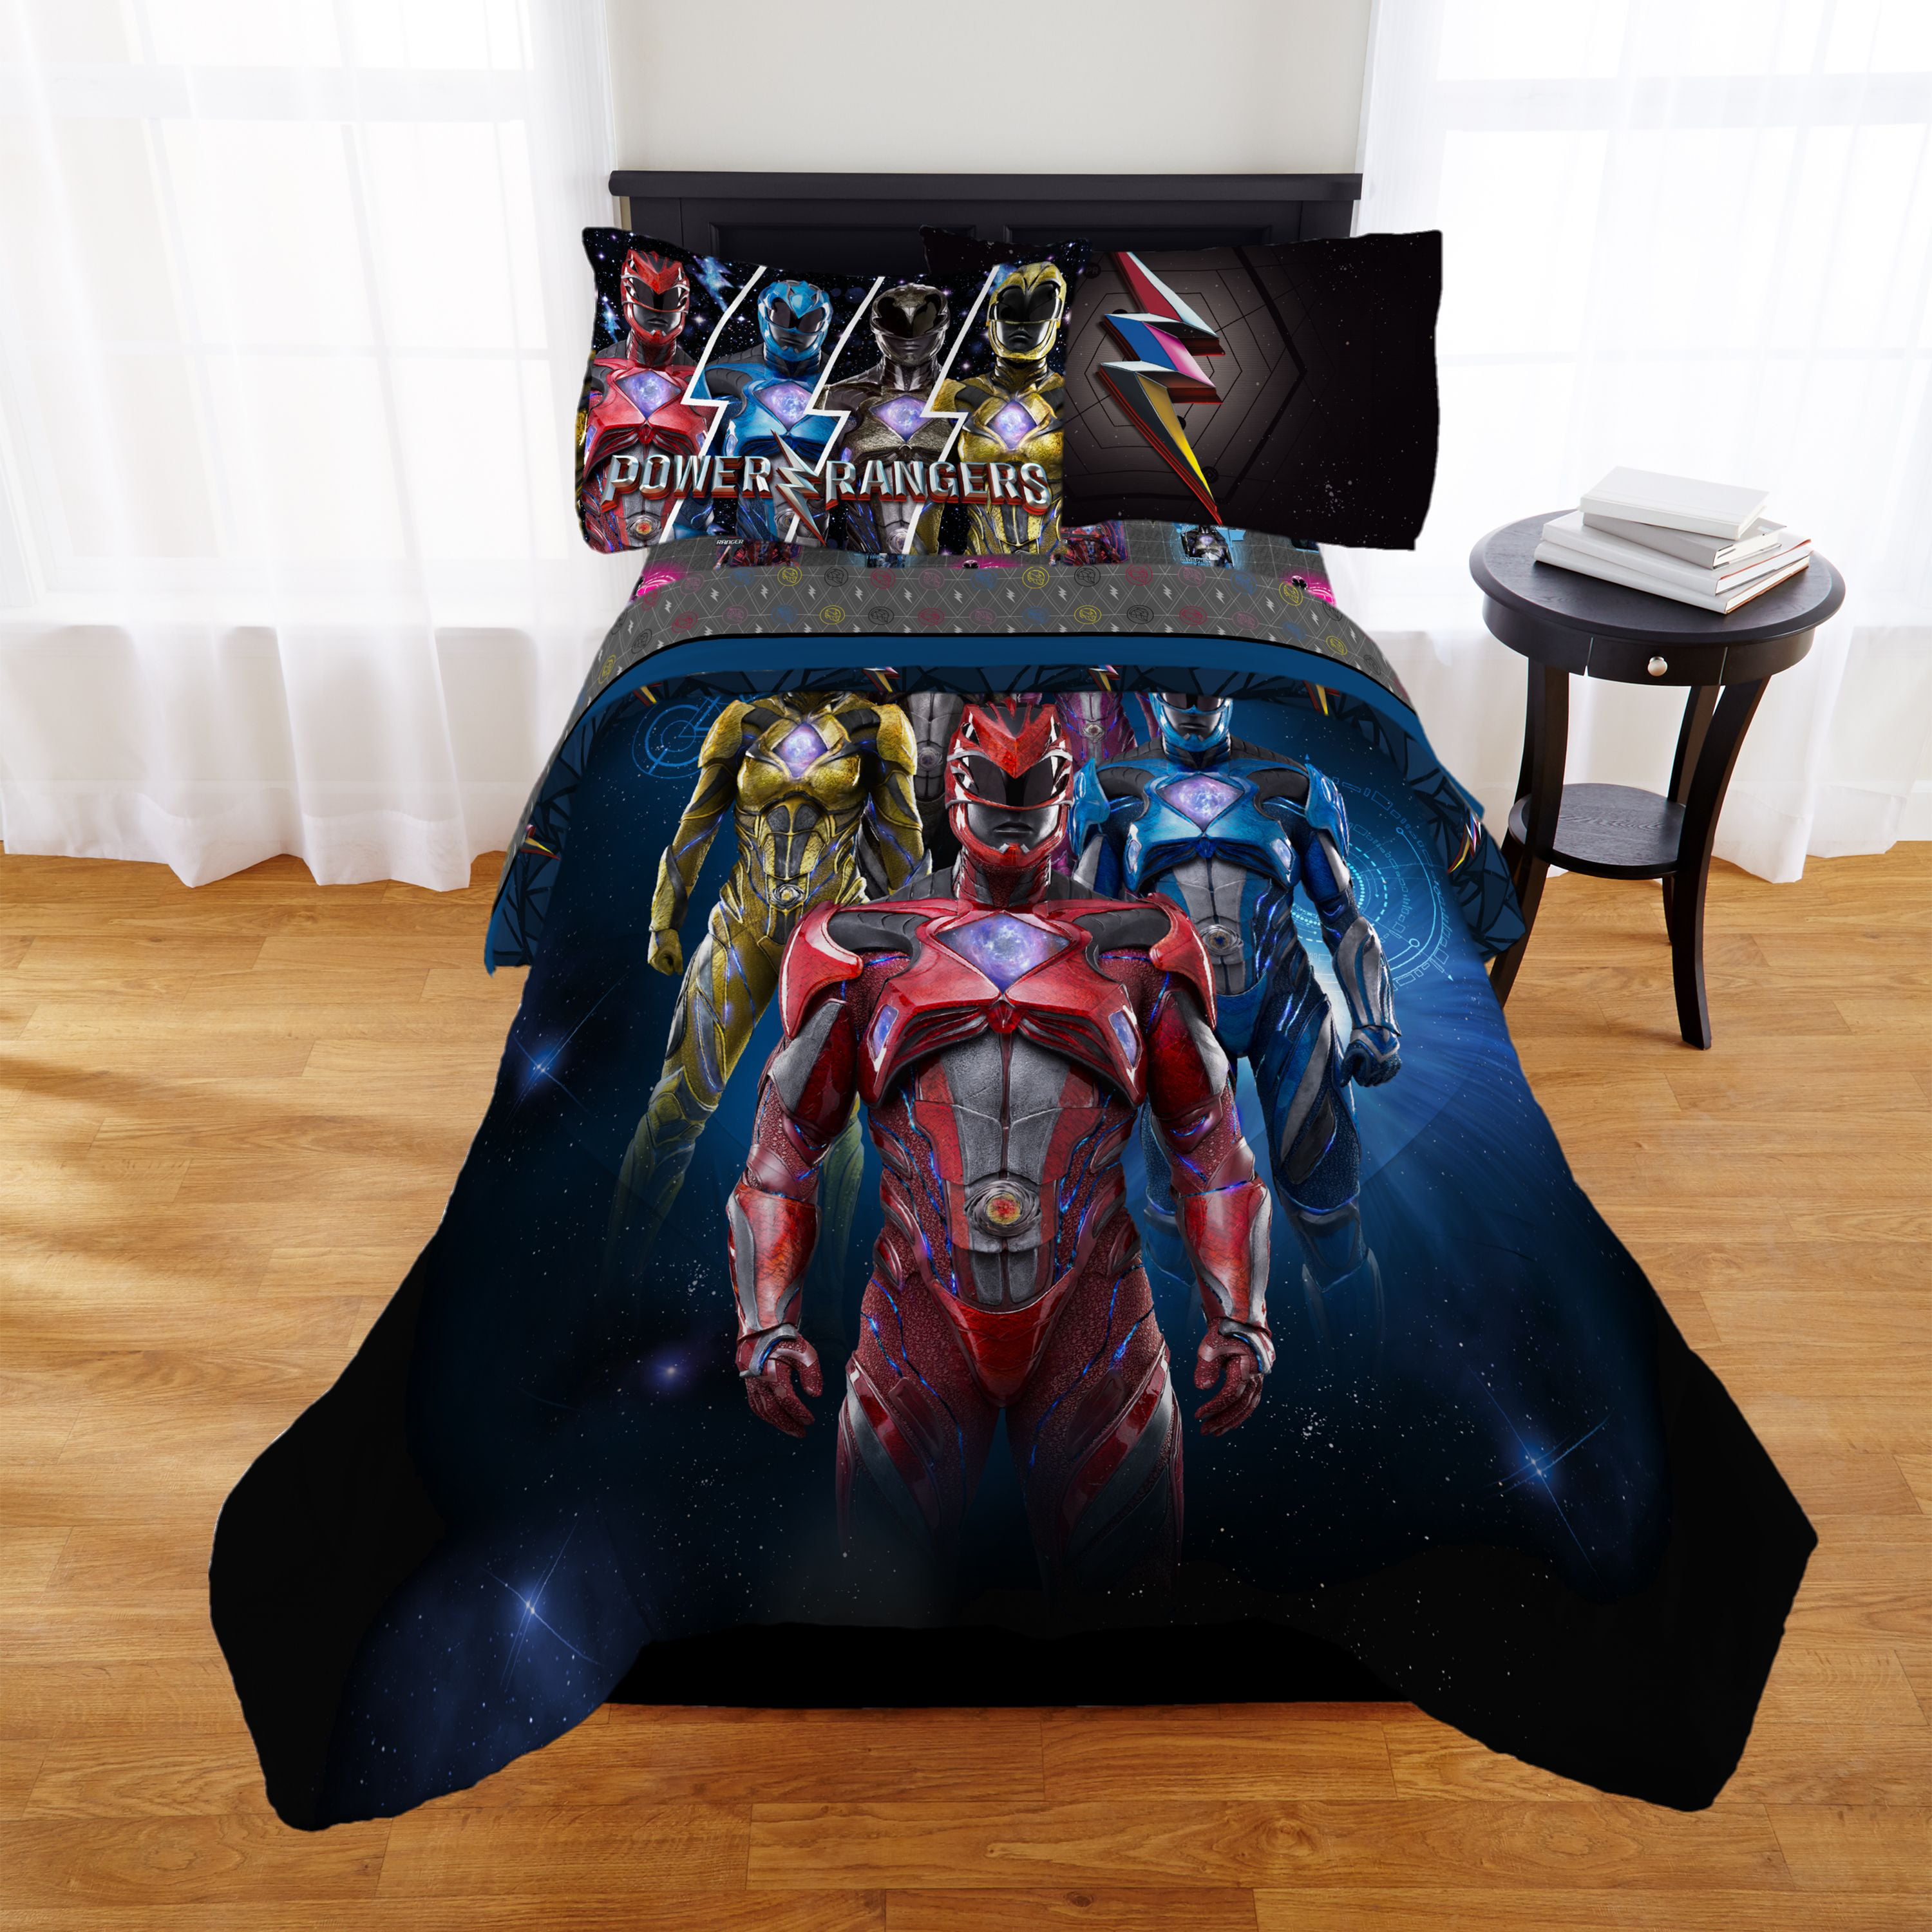 Rangers Ninja Steel Comforter Twin, Power Ranger Twin Bed In A Bag